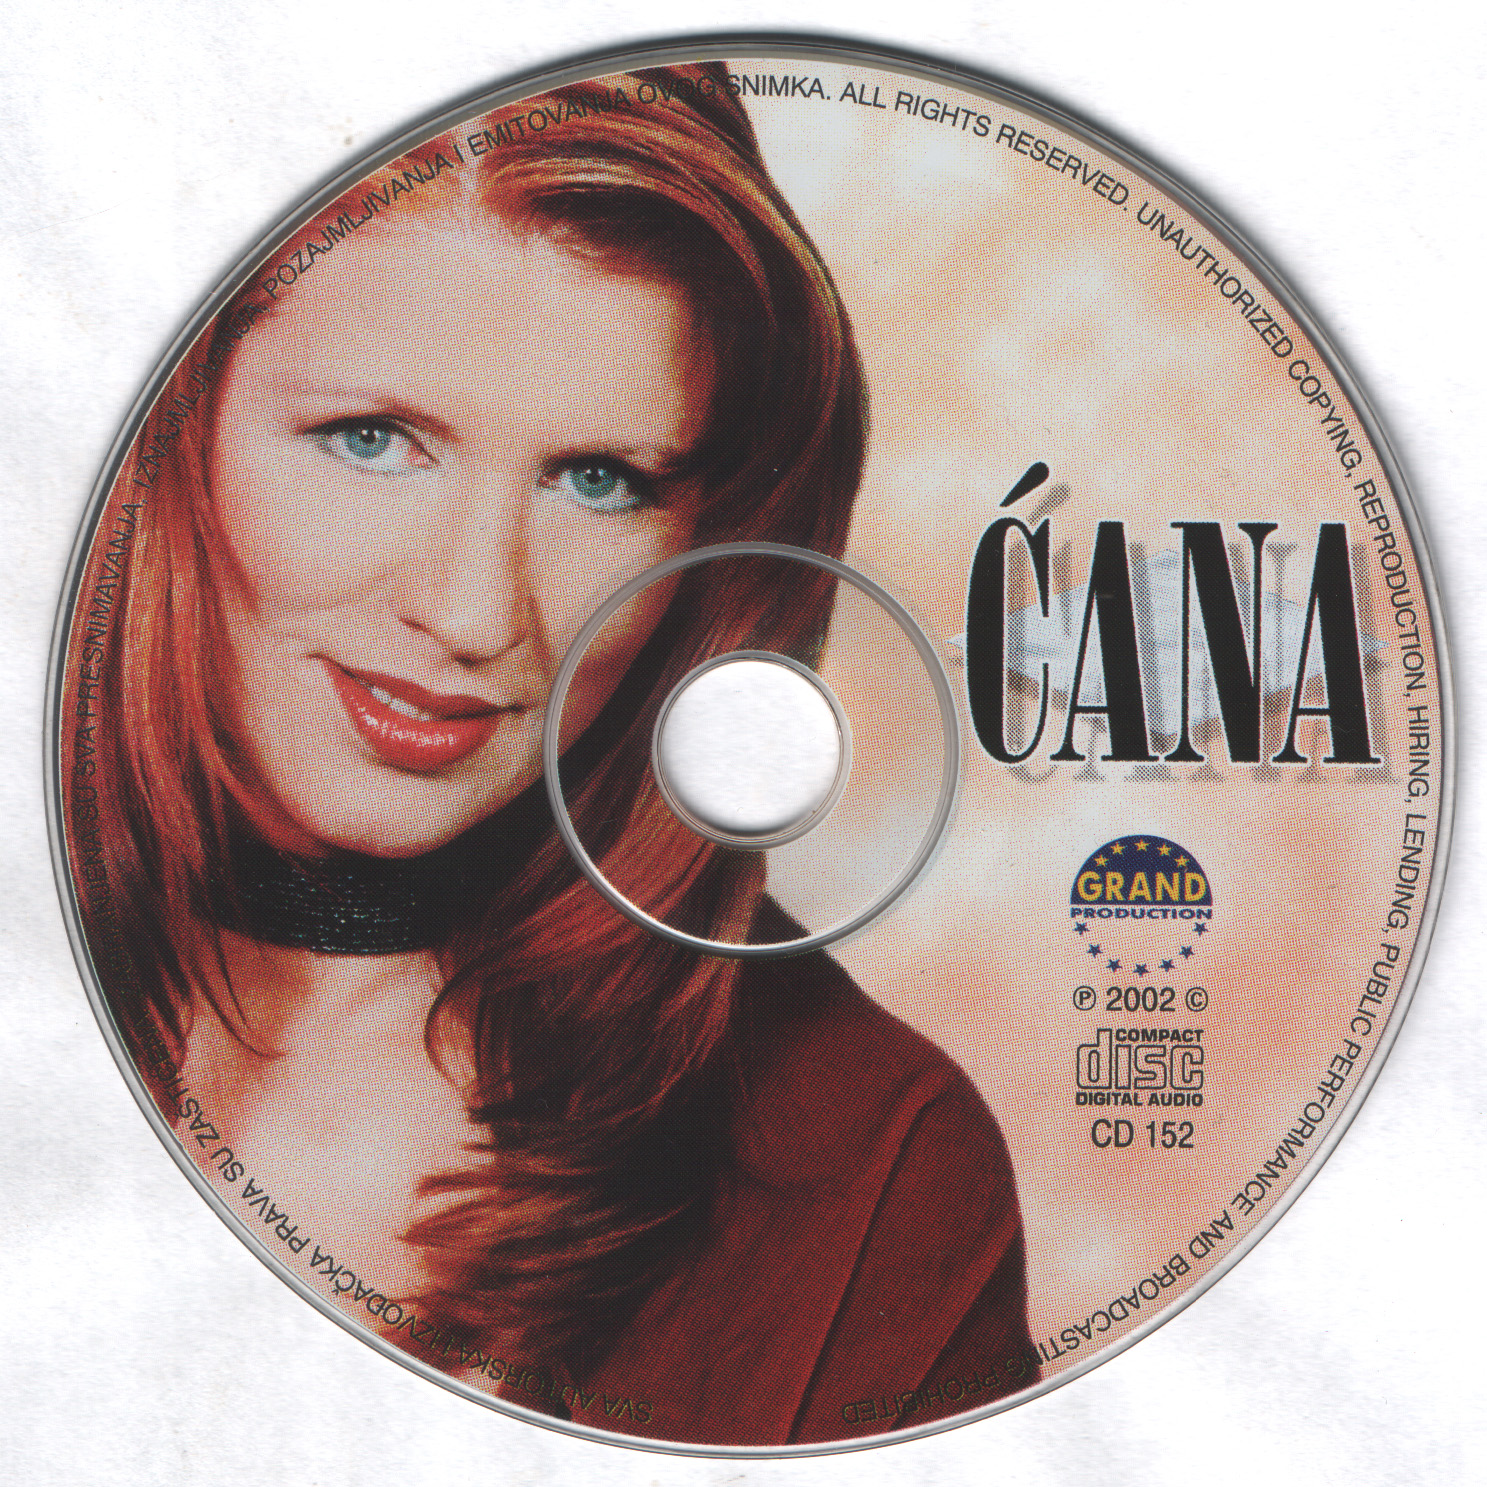 Cana 2002 CD